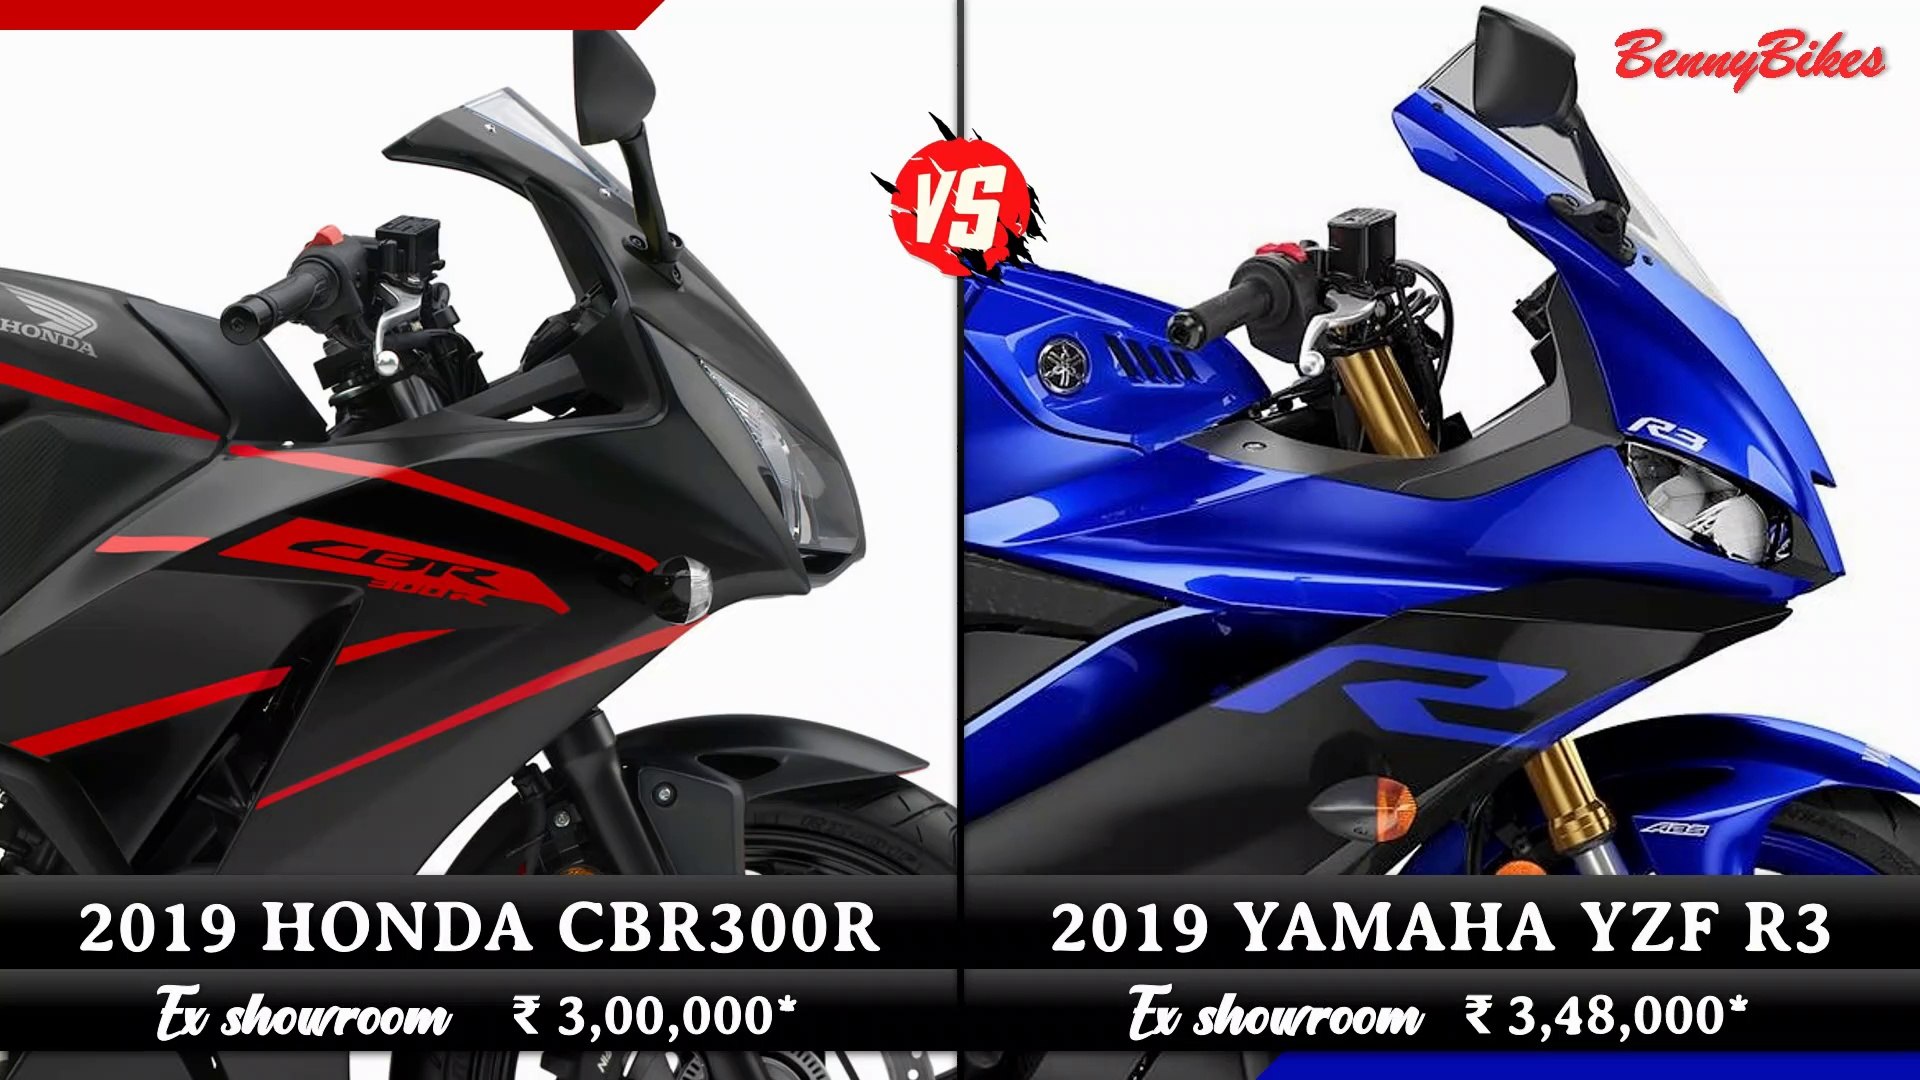 Yamaha r3 vs cbr300r